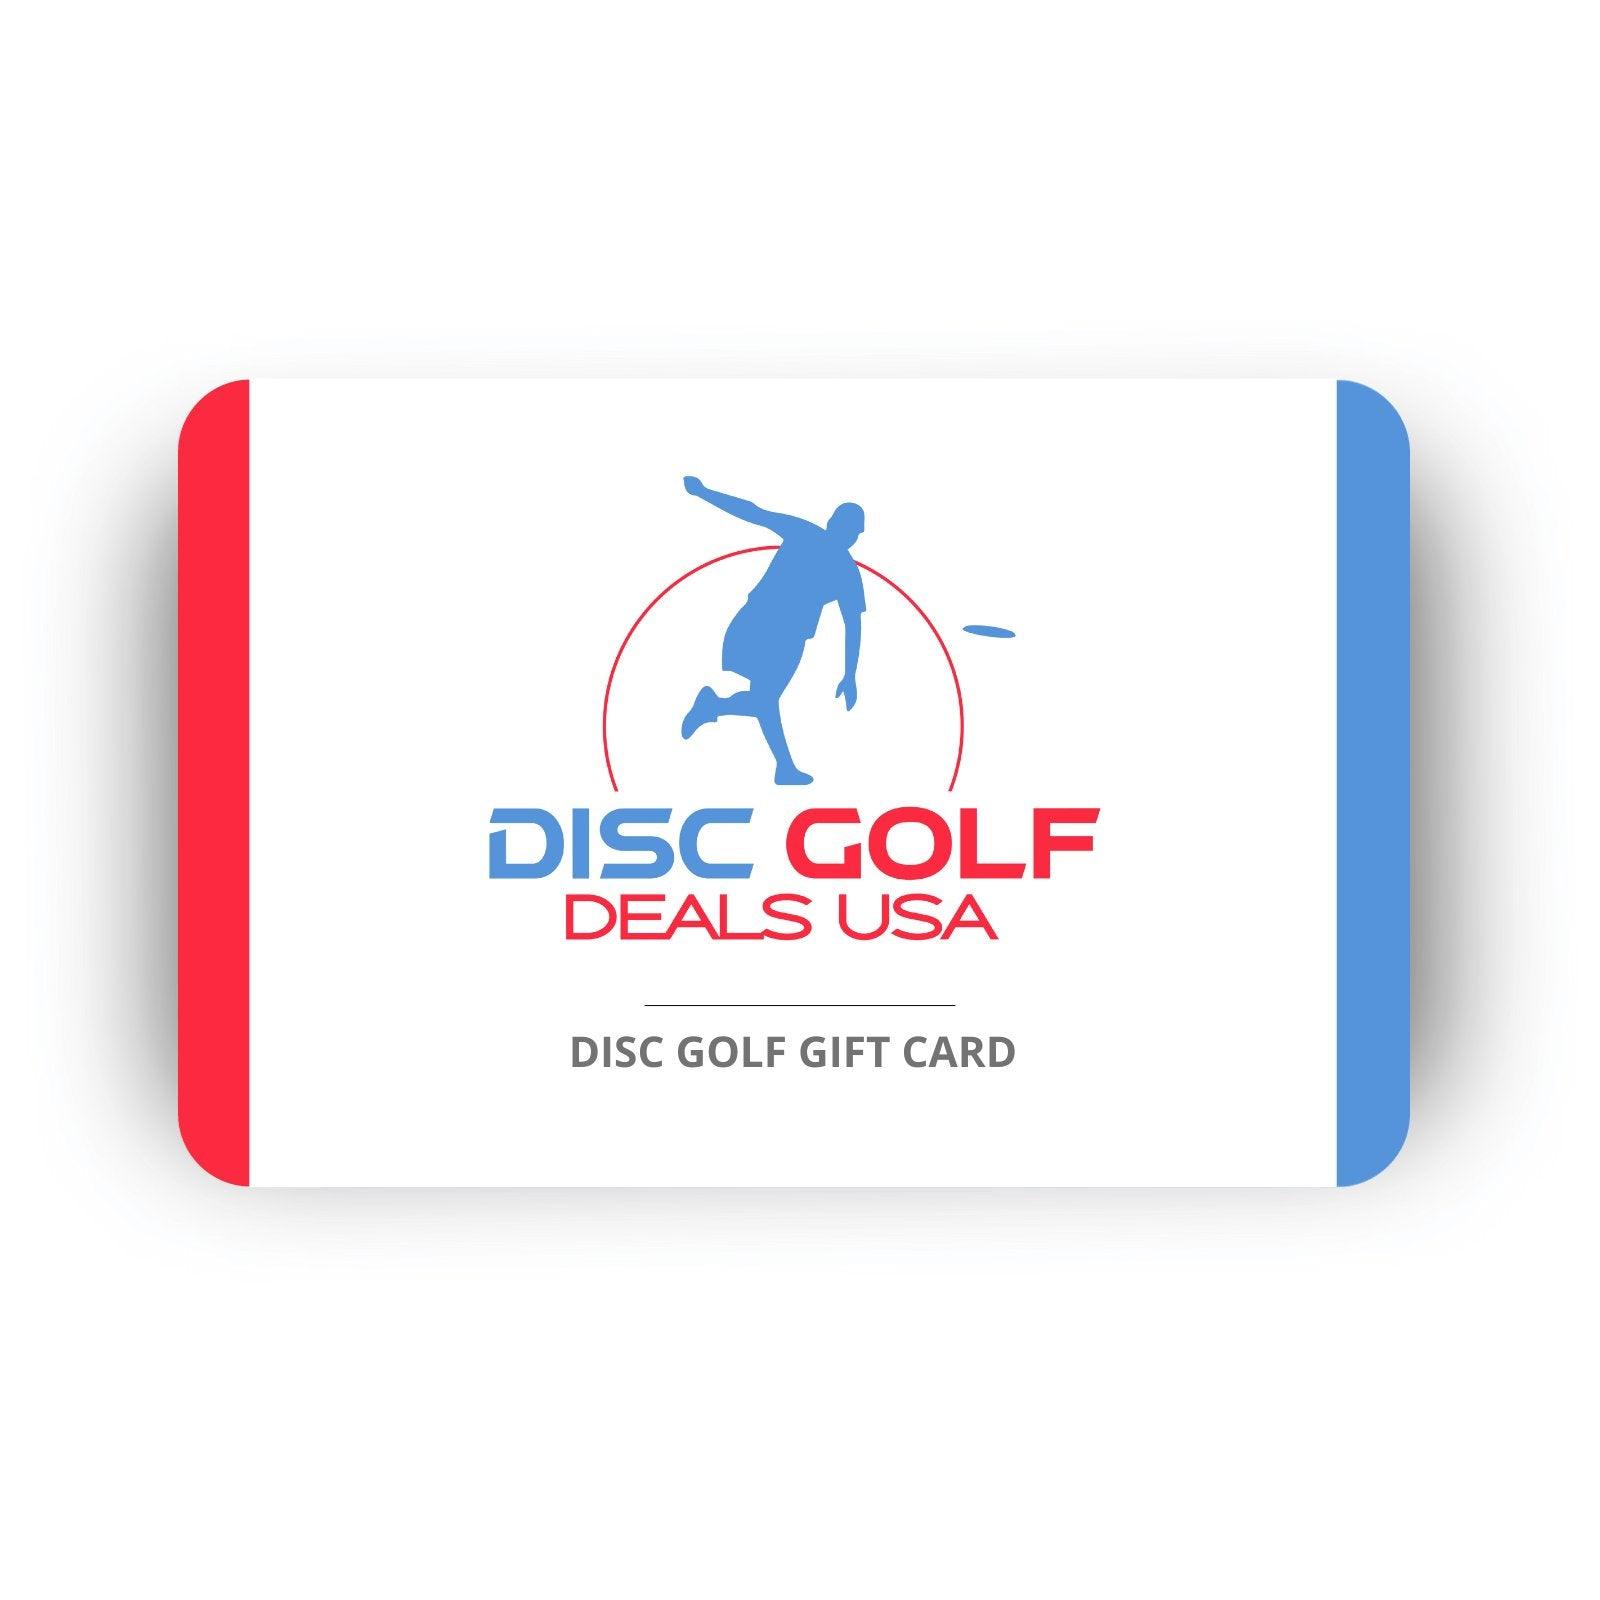 Disc Golf Deals USA Gift Card - Disc Golf Deals USA